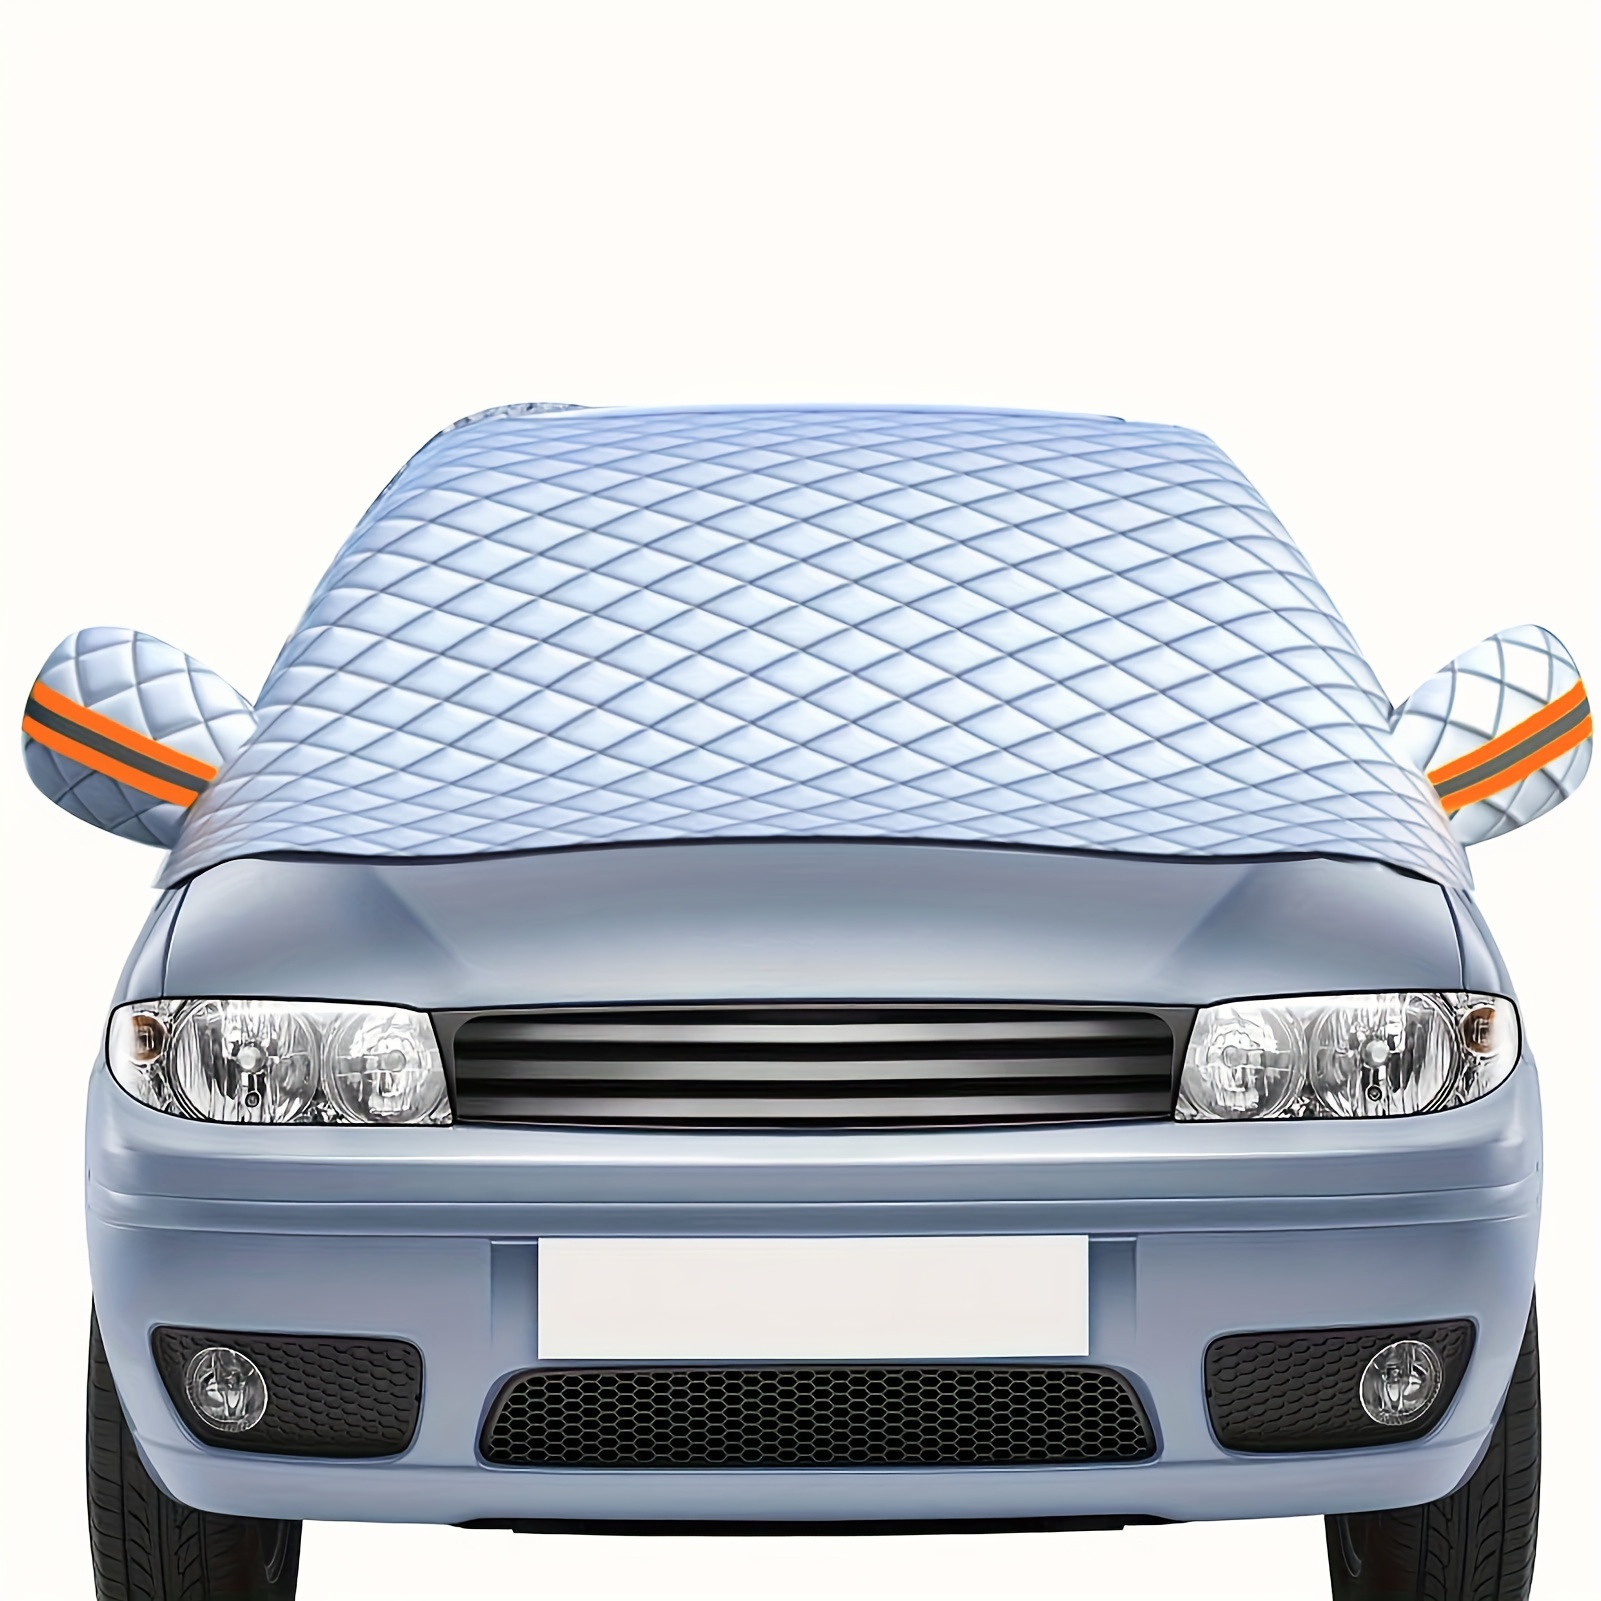 Couverture antigel magnétique pour voiture, couverture anti-glace